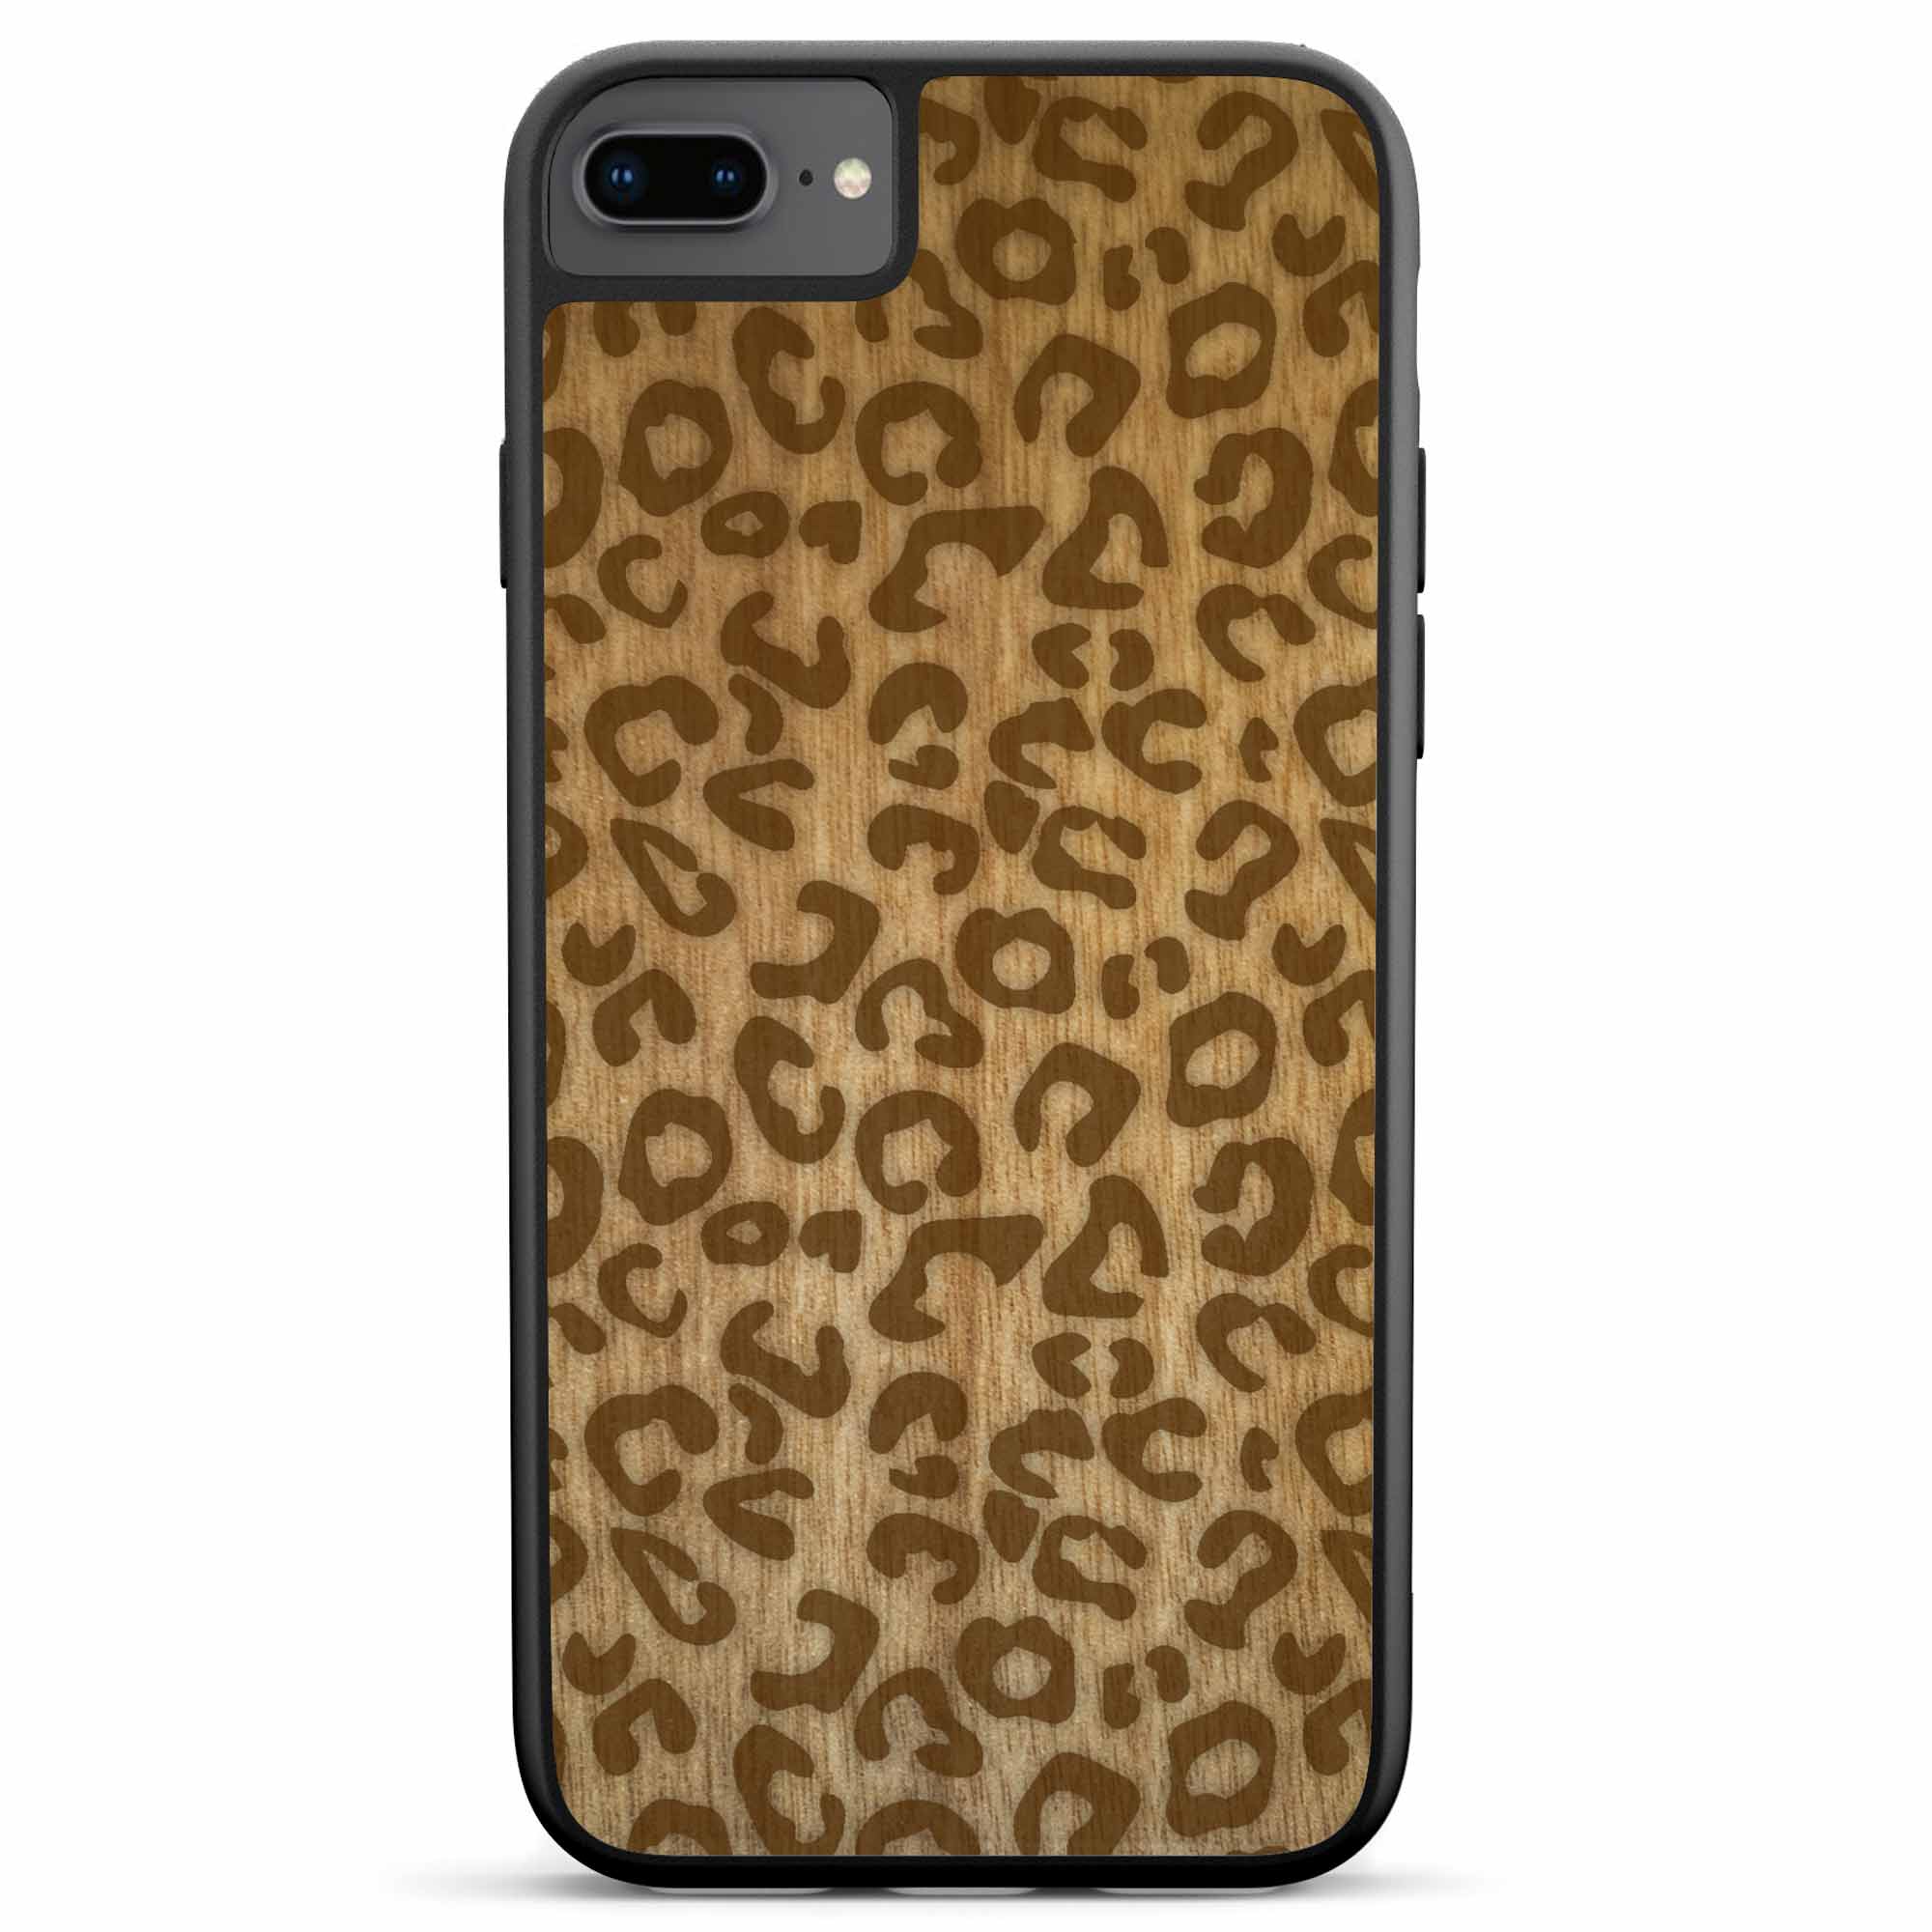 Custodia per telefono in legno con stampa ghepardo per iPhone 8 Plus